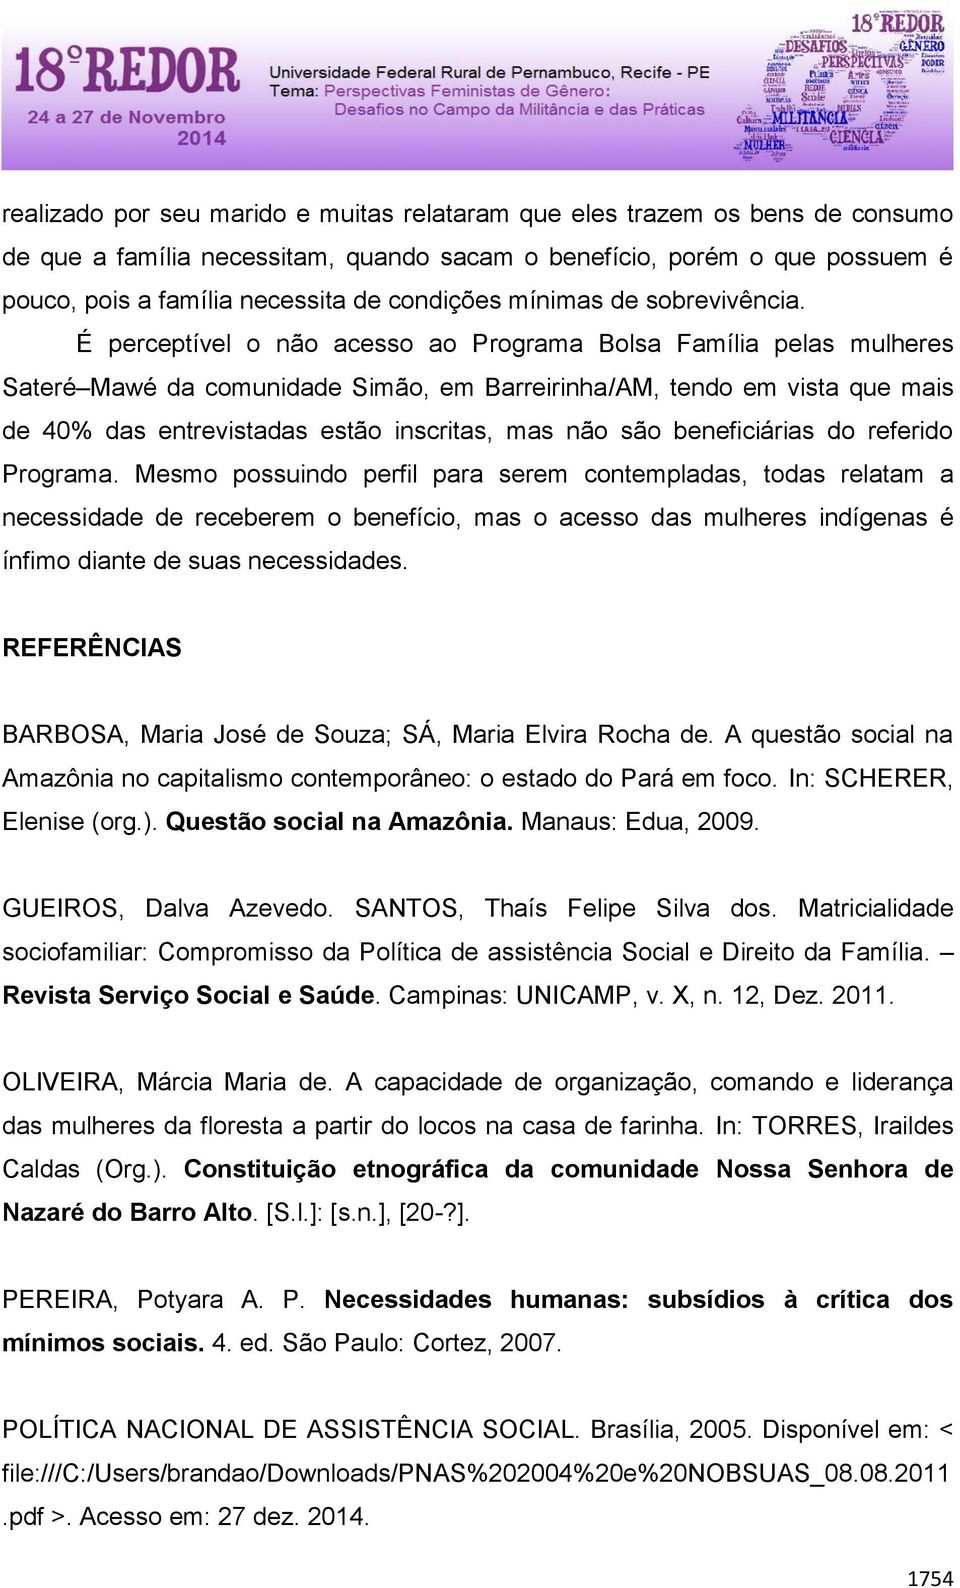 É perceptível o não acesso ao Programa Bolsa Família pelas mulheres Sateré Mawé da comunidade Simão, em Barreirinha/AM, tendo em vista que mais de 40% das entrevistadas estão inscritas, mas não são